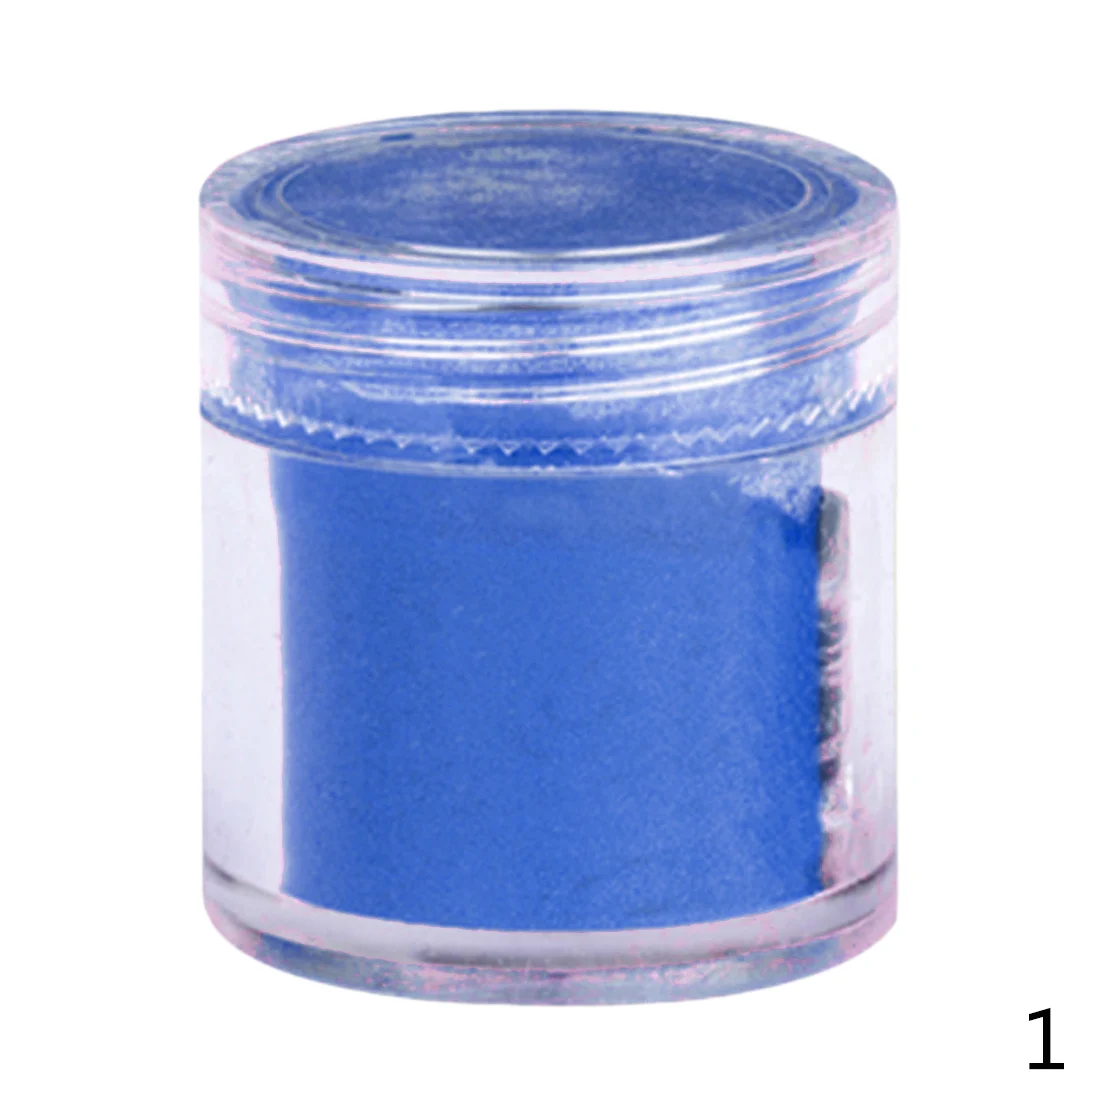 26 цветов DIY бархатный флокирующий порошок для бархатного маникюра, лак для ногтей, акриловые порошки жидкостей 10 г - Цвет: Sapphire Blue